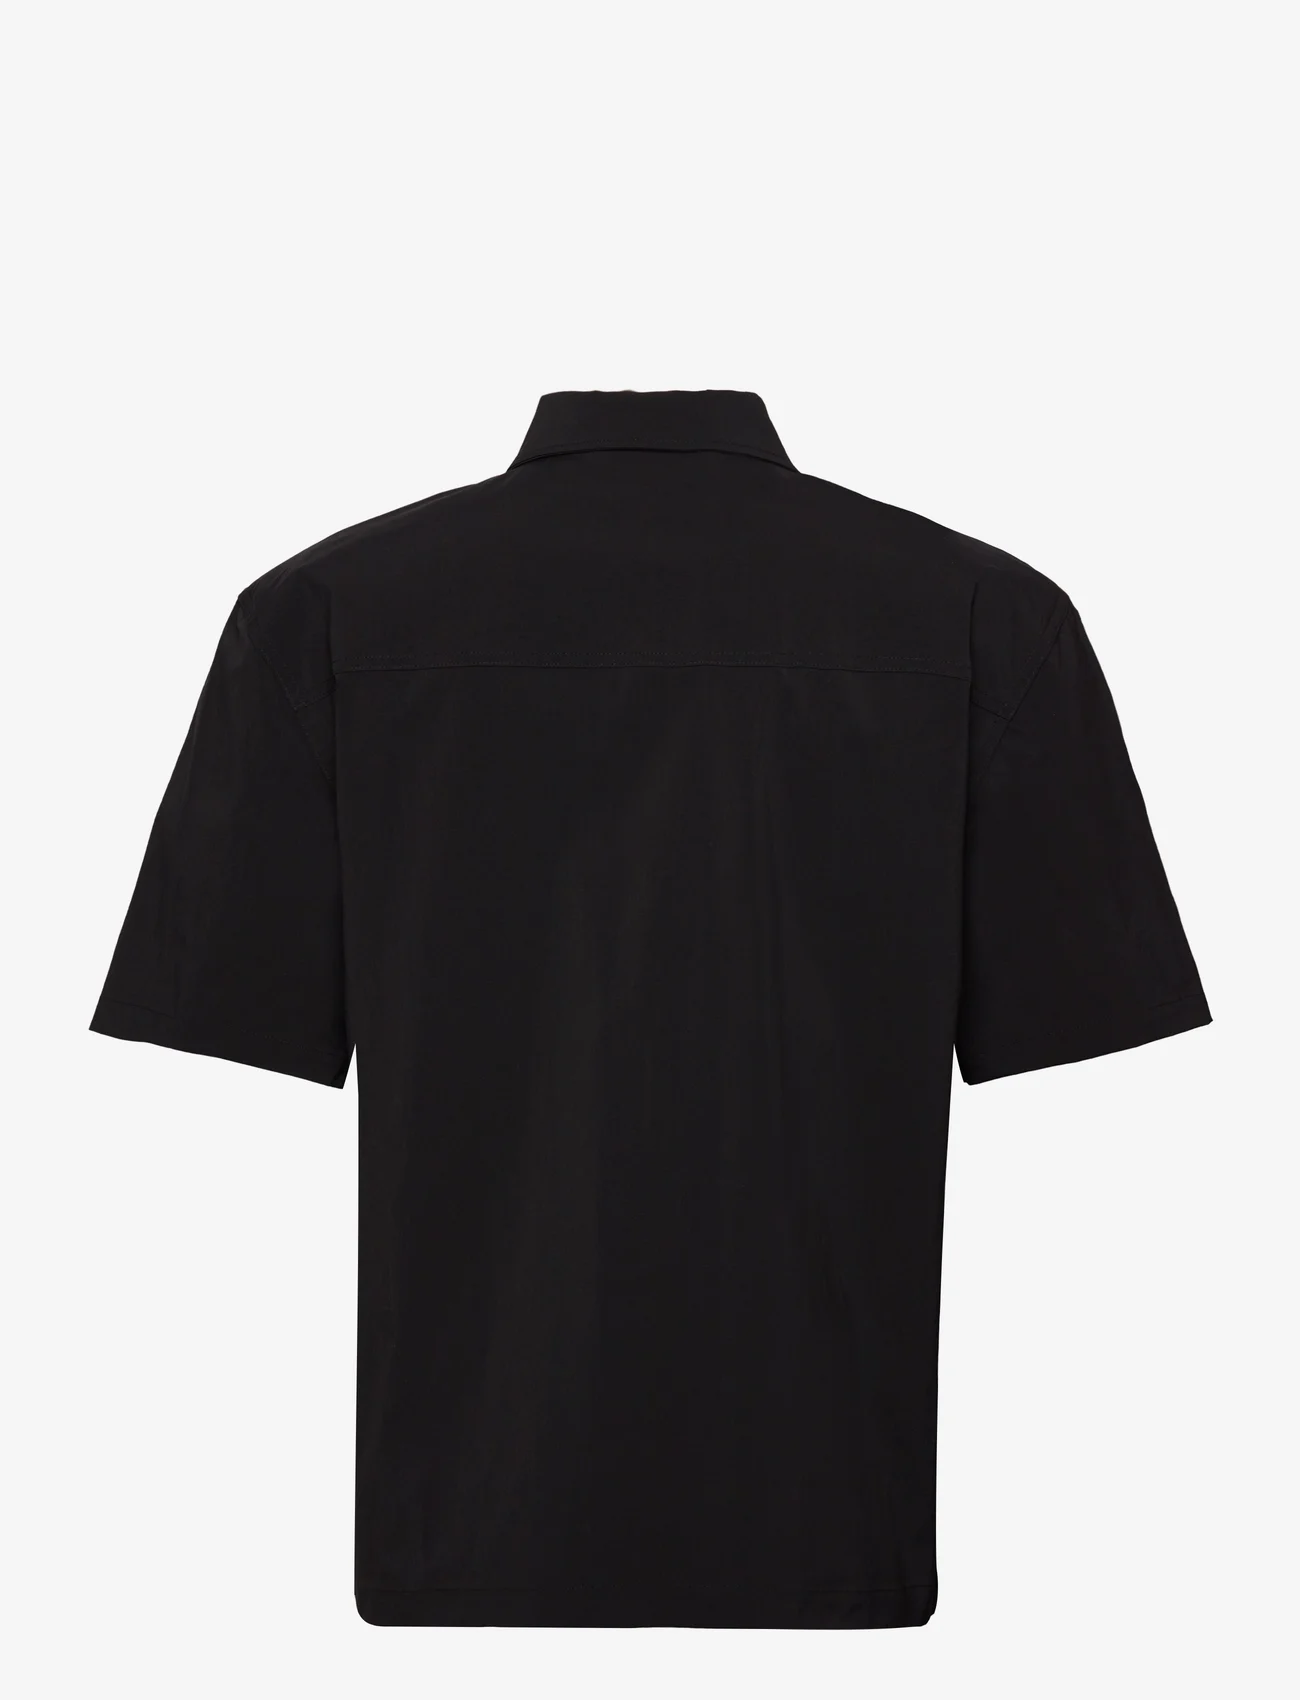 HAN Kjøbenhavn - Nylon Short Sleeve Shirt - basic skjortor - black - 1